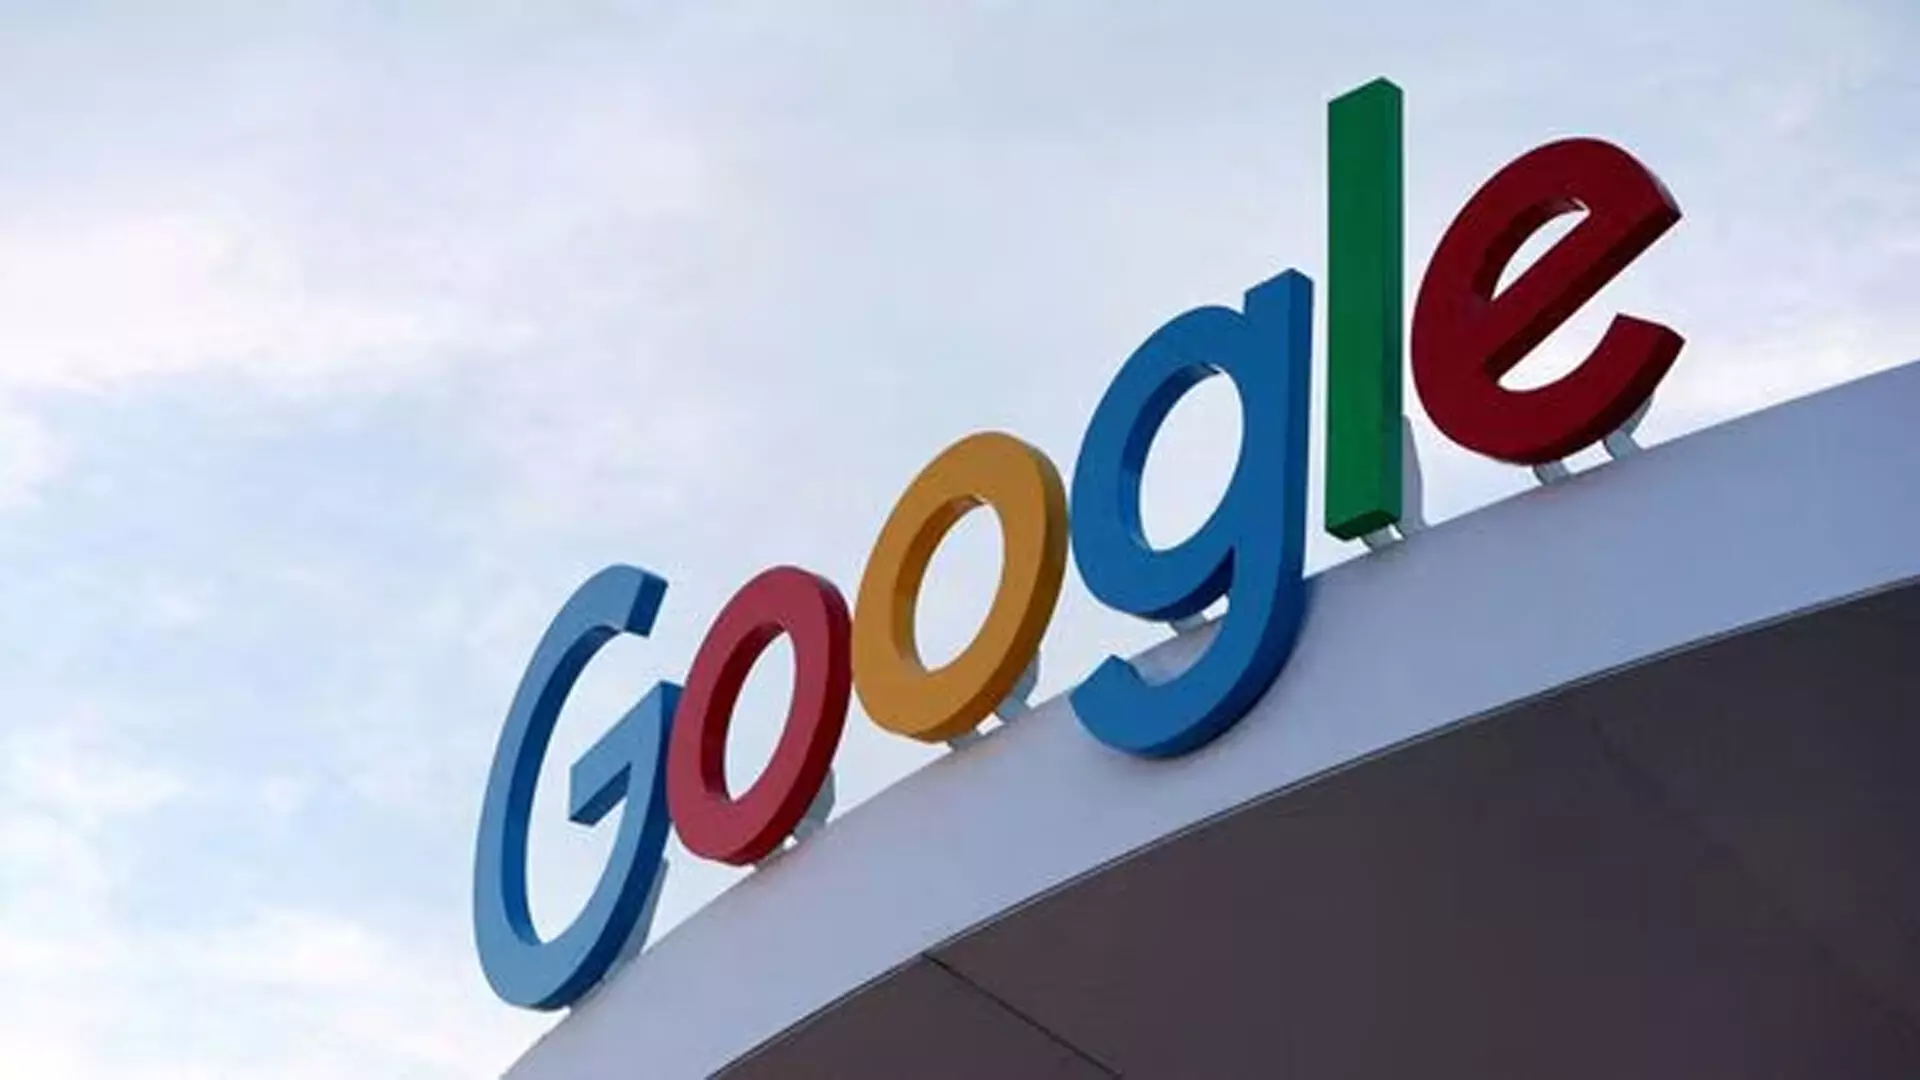 समाचार प्रकाशकों के साथ विवाद पर Google ने फ़्रांस में €250 मिलियन का जुर्माना लगाया